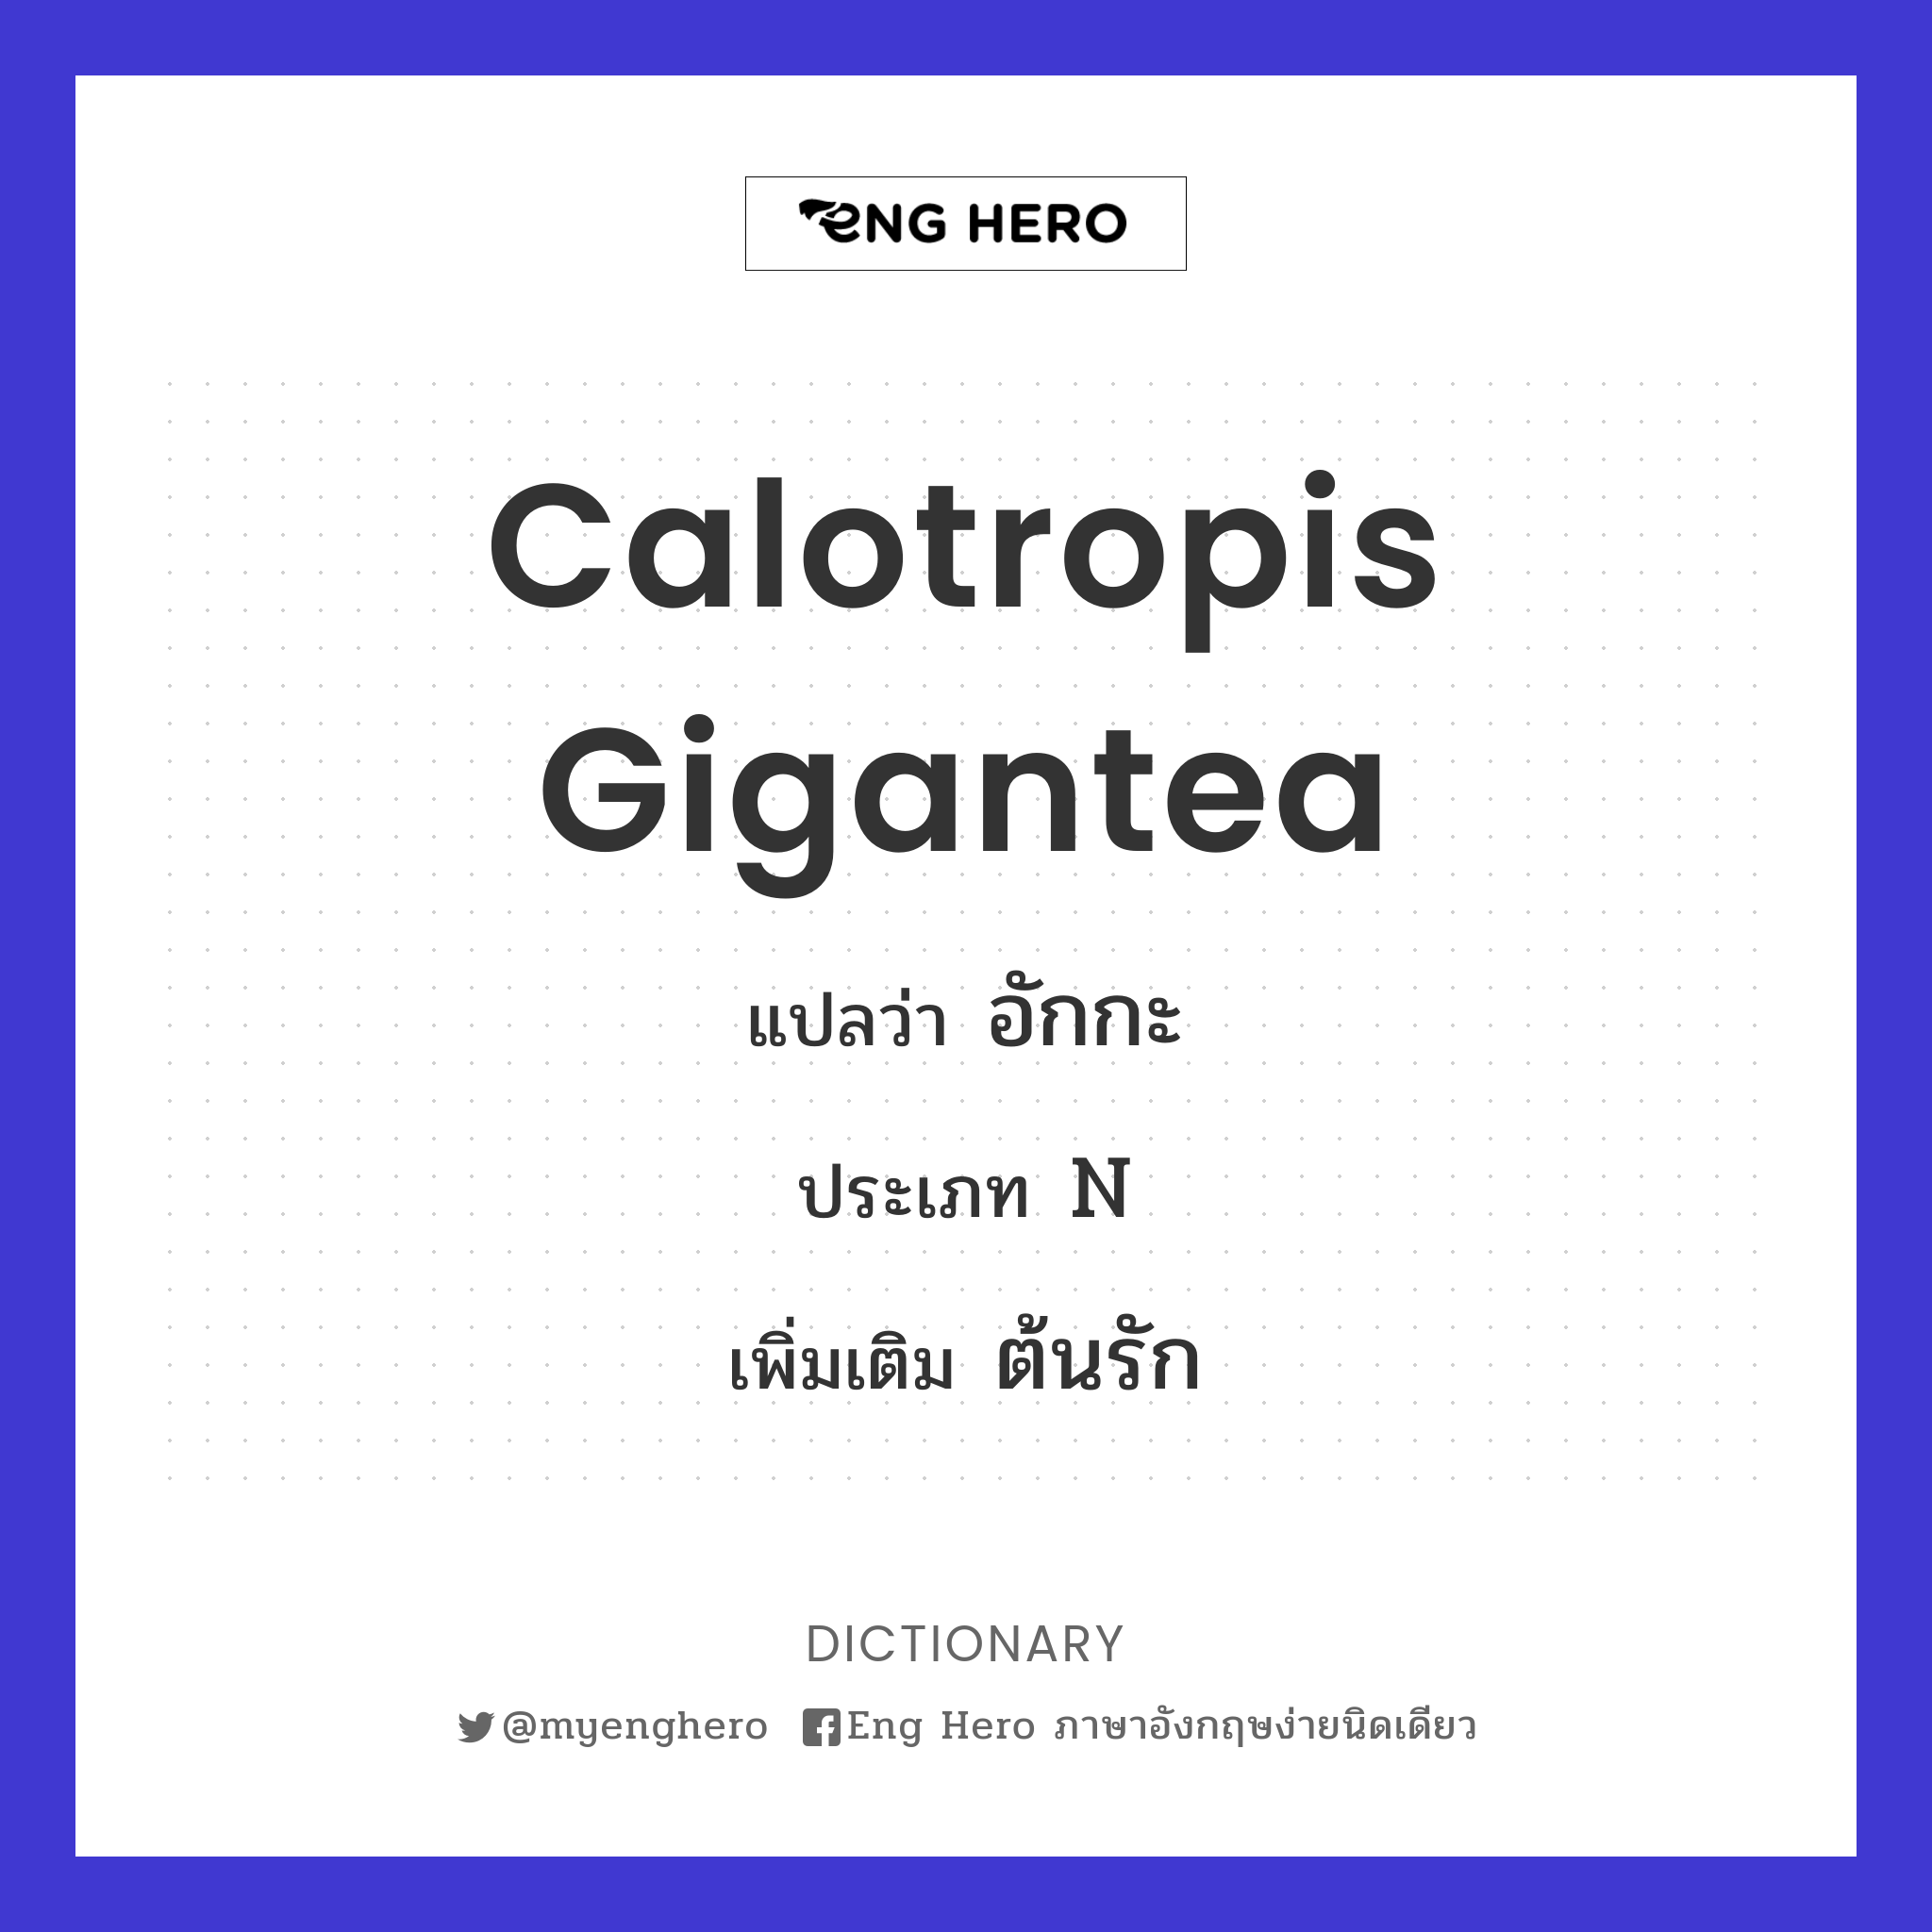 Calotropis gigantea